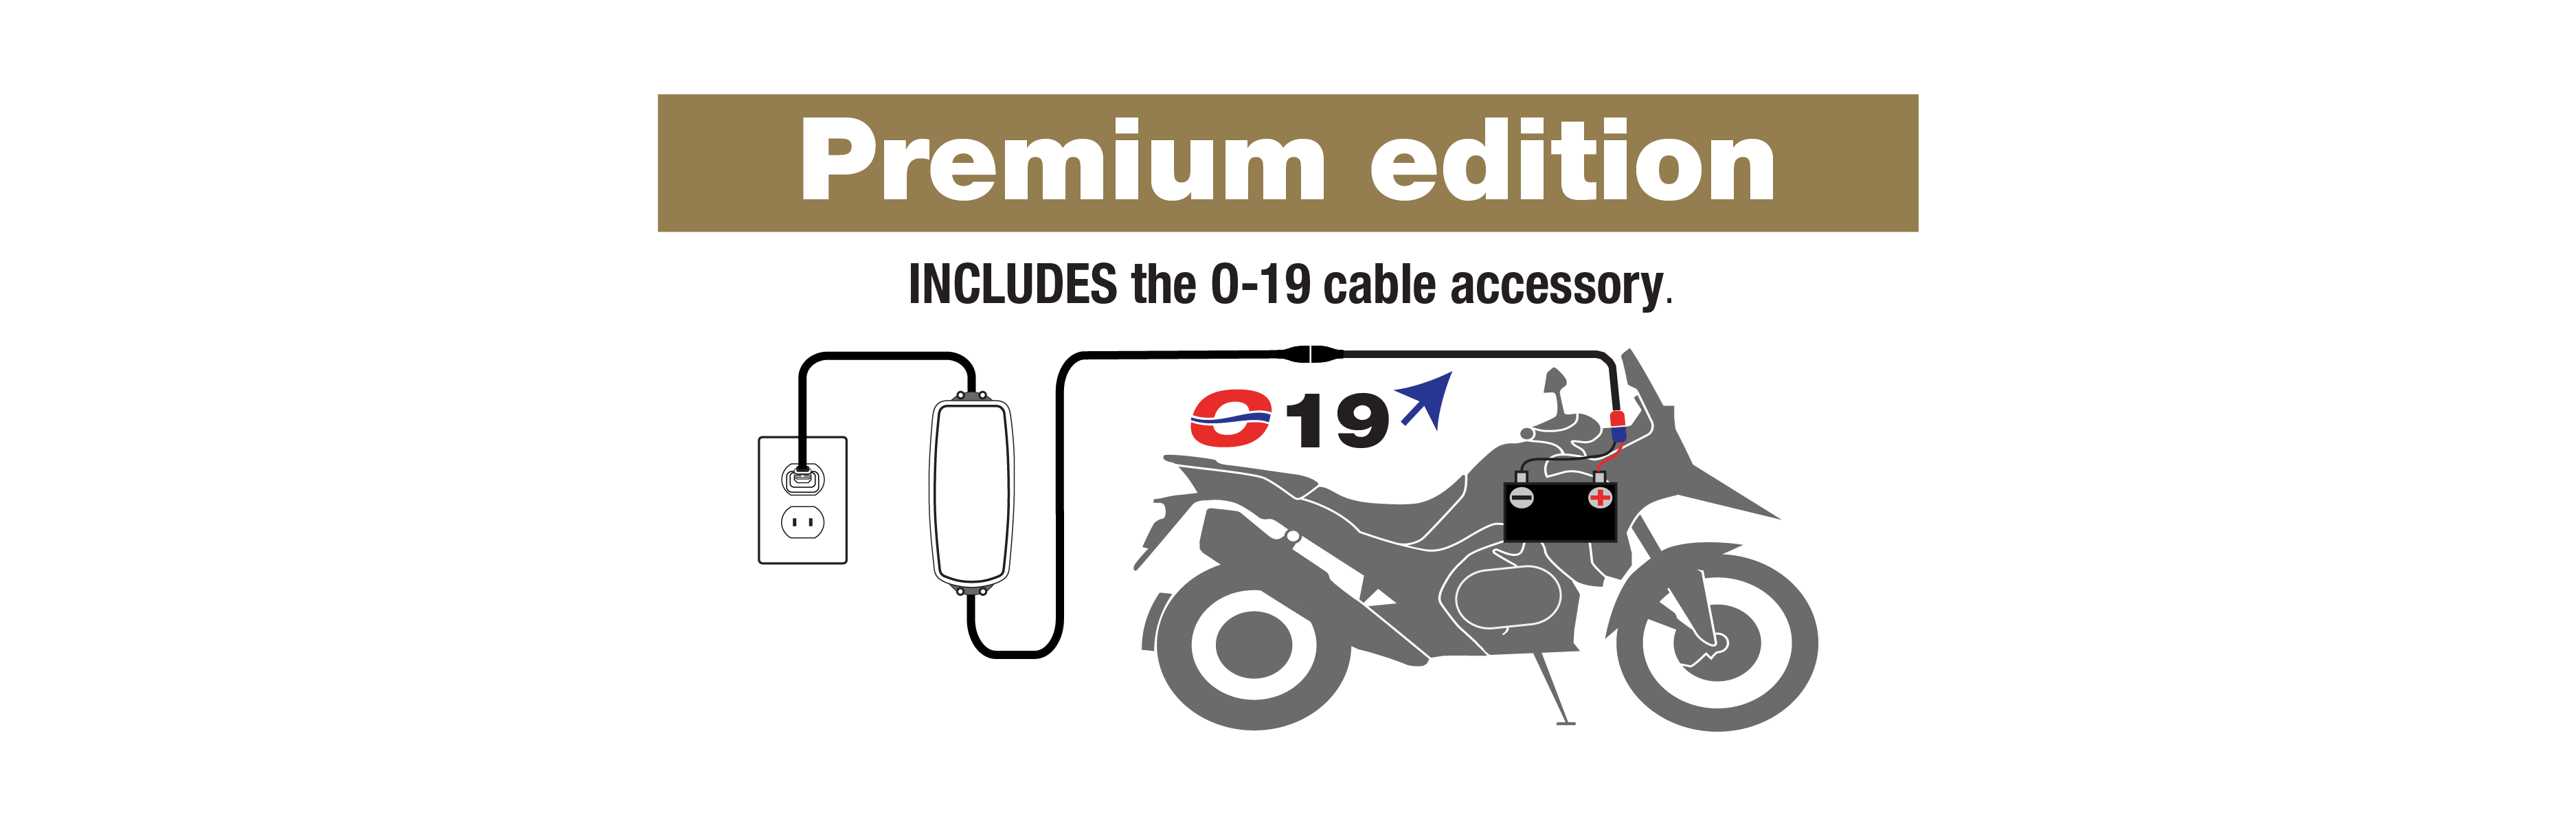 OptiMate 4 Lithium optional cable accessories & premium edition